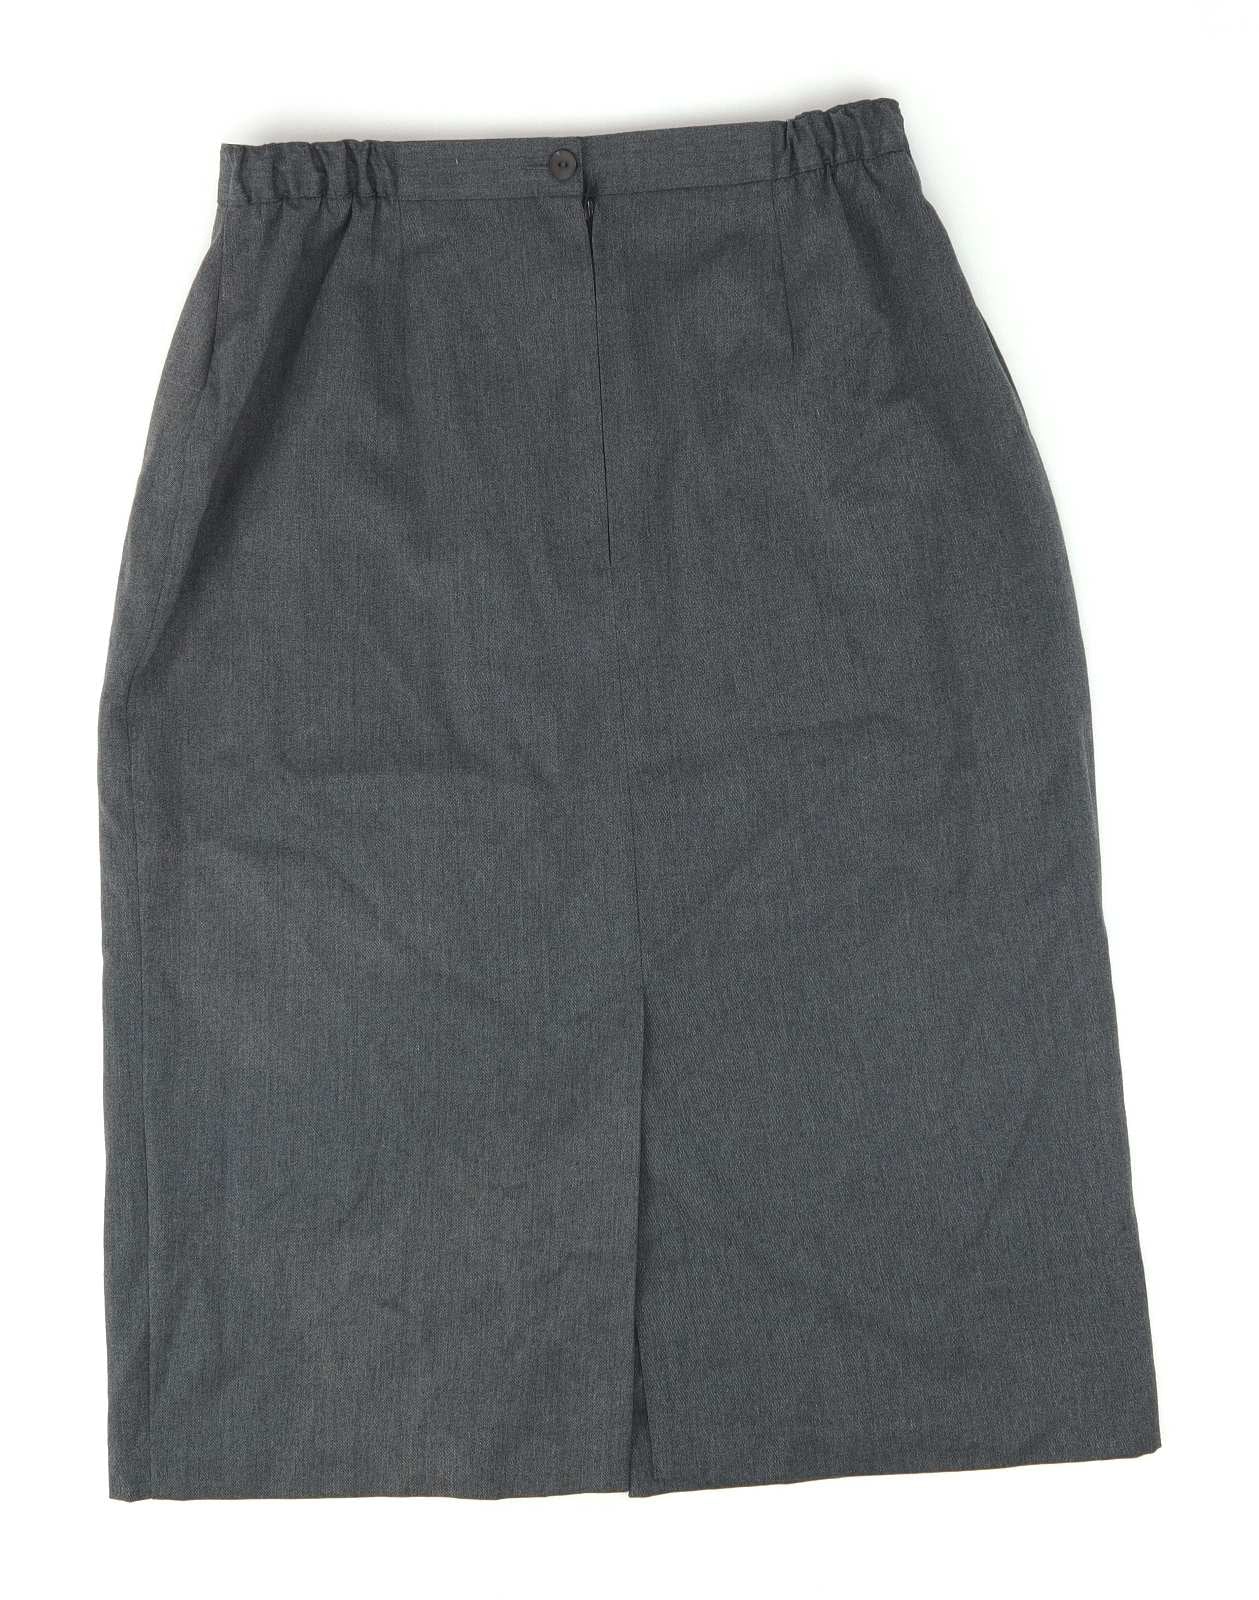 Berkertex Womens Size 14 Grey Split Divided Skirt (Regular)